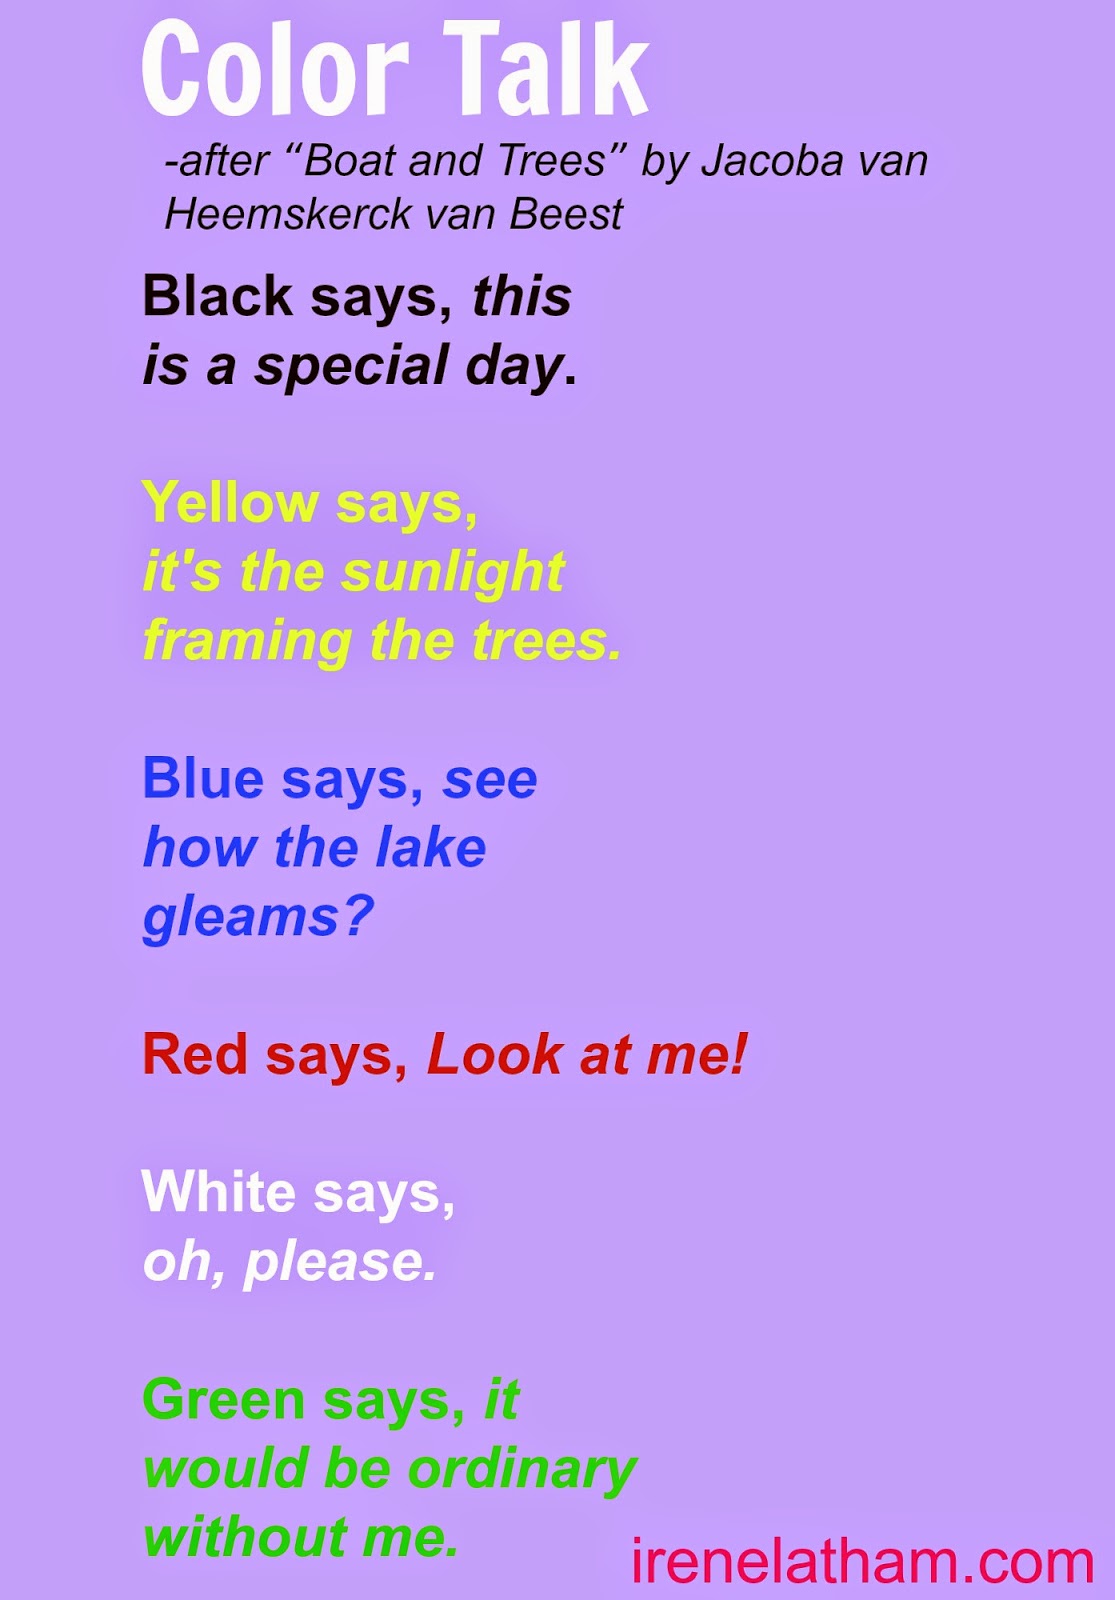 Live Your Poem Artspeak Poem 28 Color Talk Coloring Wallpapers Download Free Images Wallpaper [coloring654.blogspot.com]